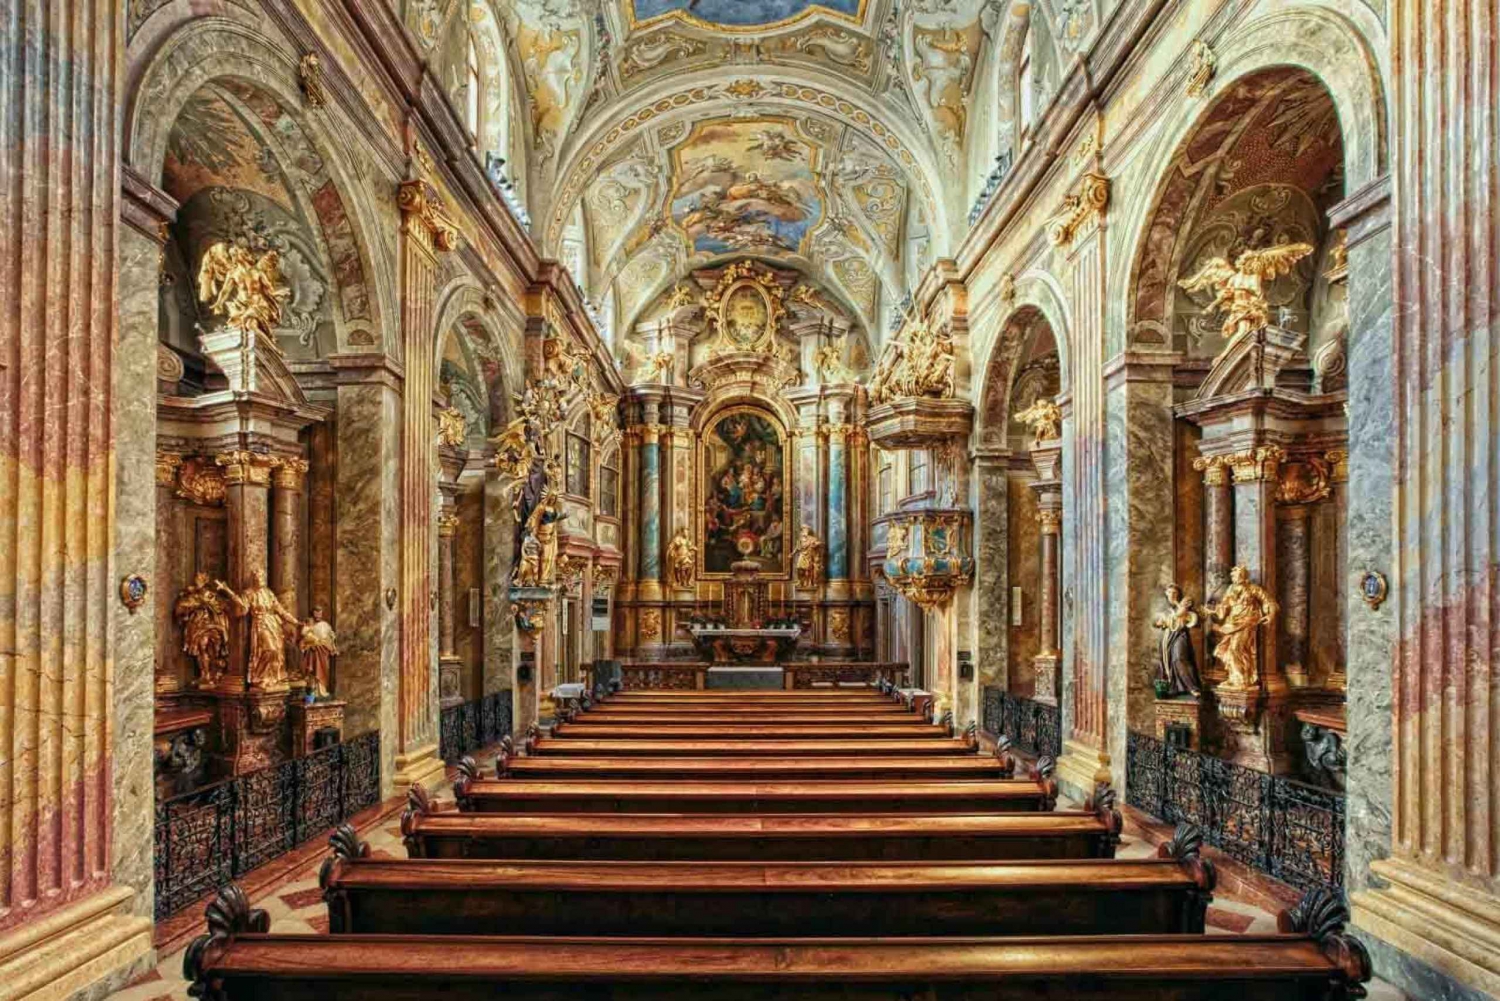 Vienne : concert de musique classique à l’église Sainte-Anne